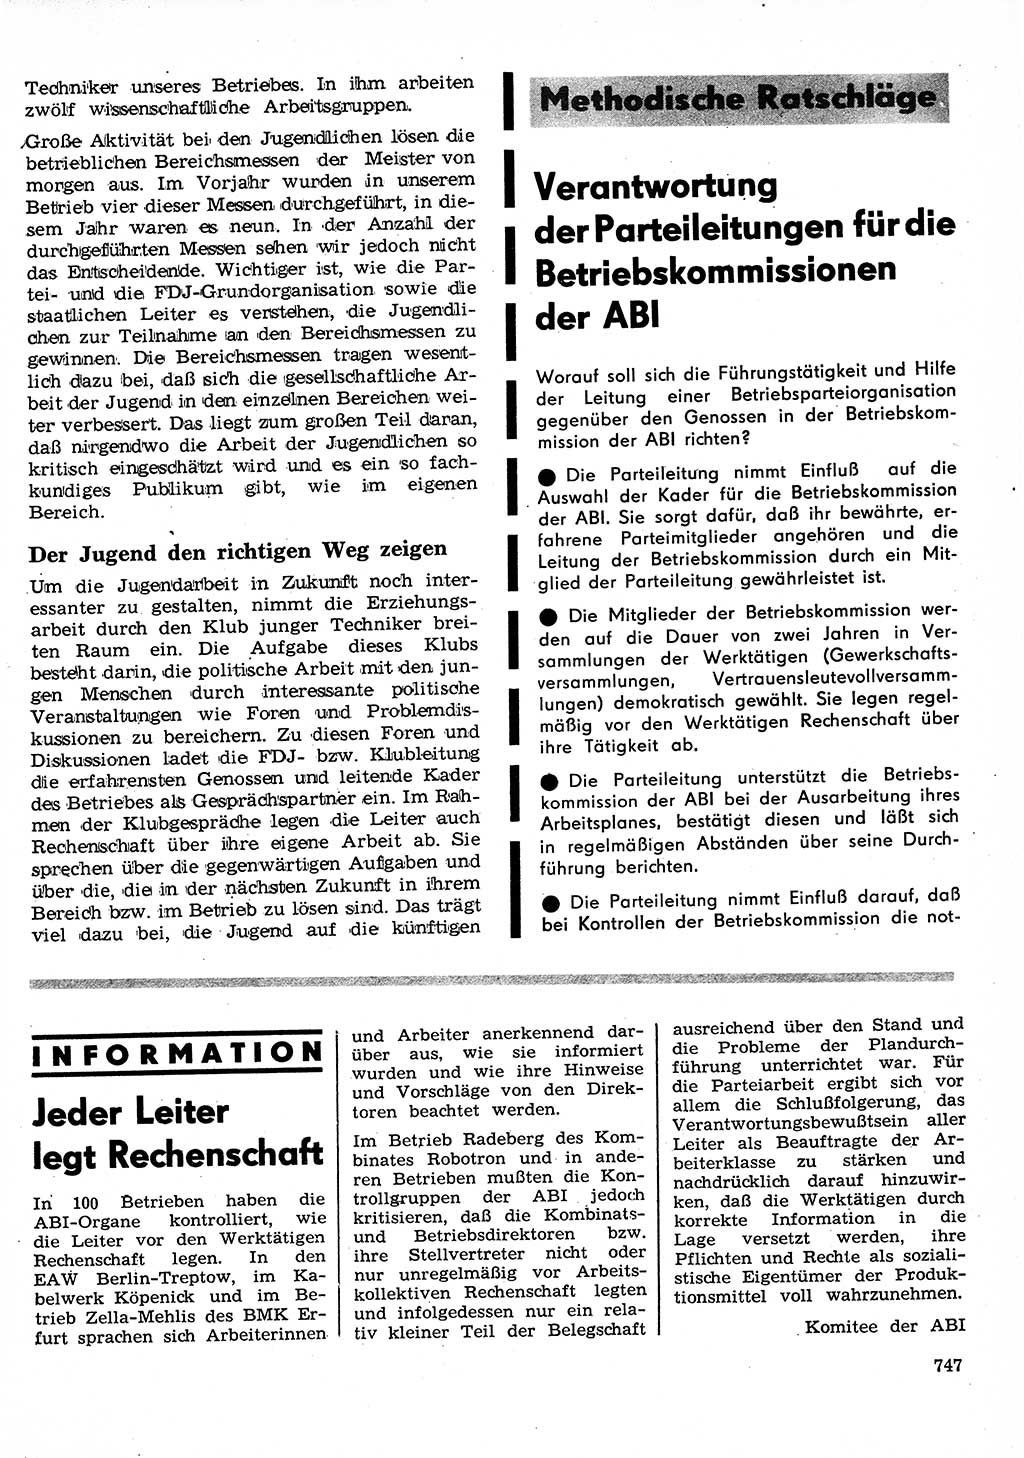 Neuer Weg (NW), Organ des Zentralkomitees (ZK) der SED (Sozialistische Einheitspartei Deutschlands) für Fragen des Parteilebens, 26. Jahrgang [Deutsche Demokratische Republik (DDR)] 1971, Seite 747 (NW ZK SED DDR 1971, S. 747)